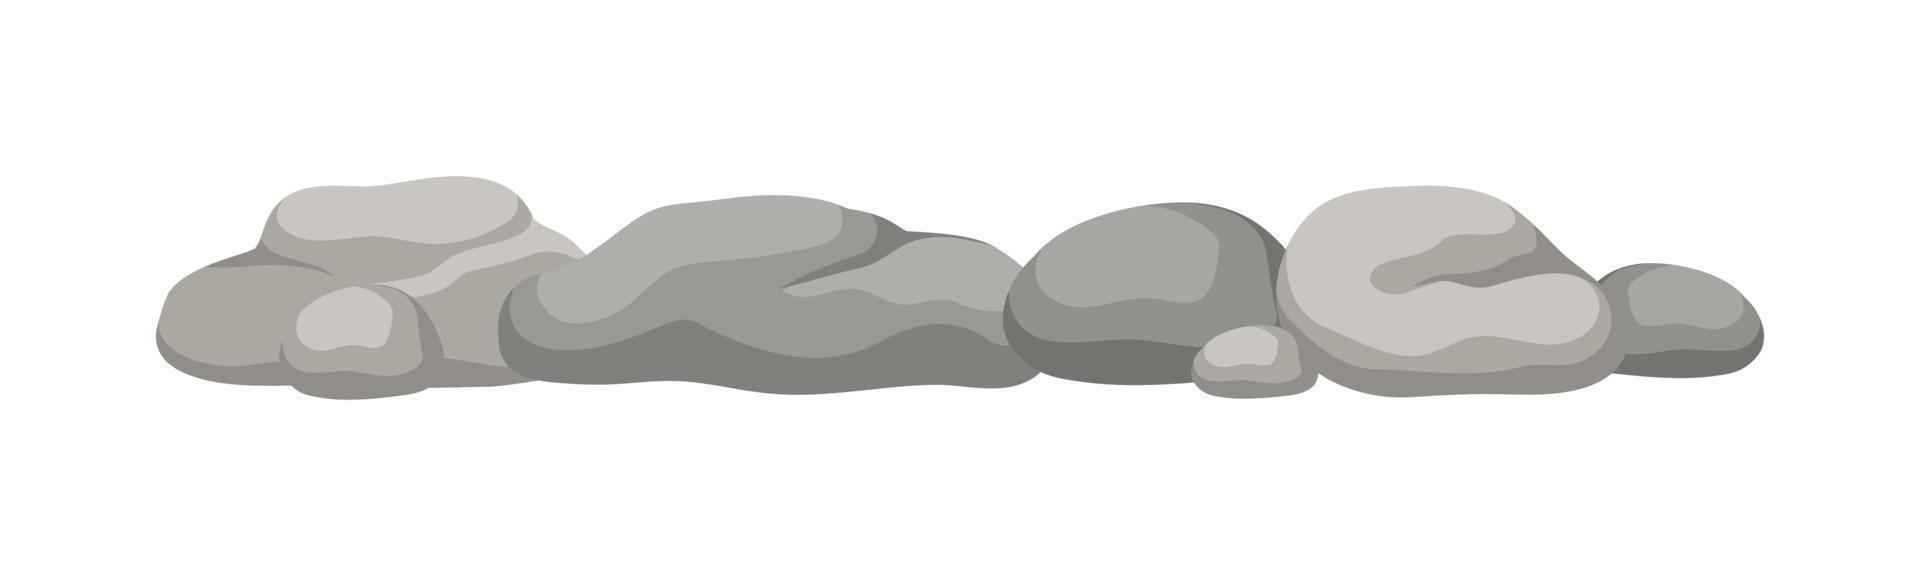 rots steen kei vorming tekenfilm vector illustratie.